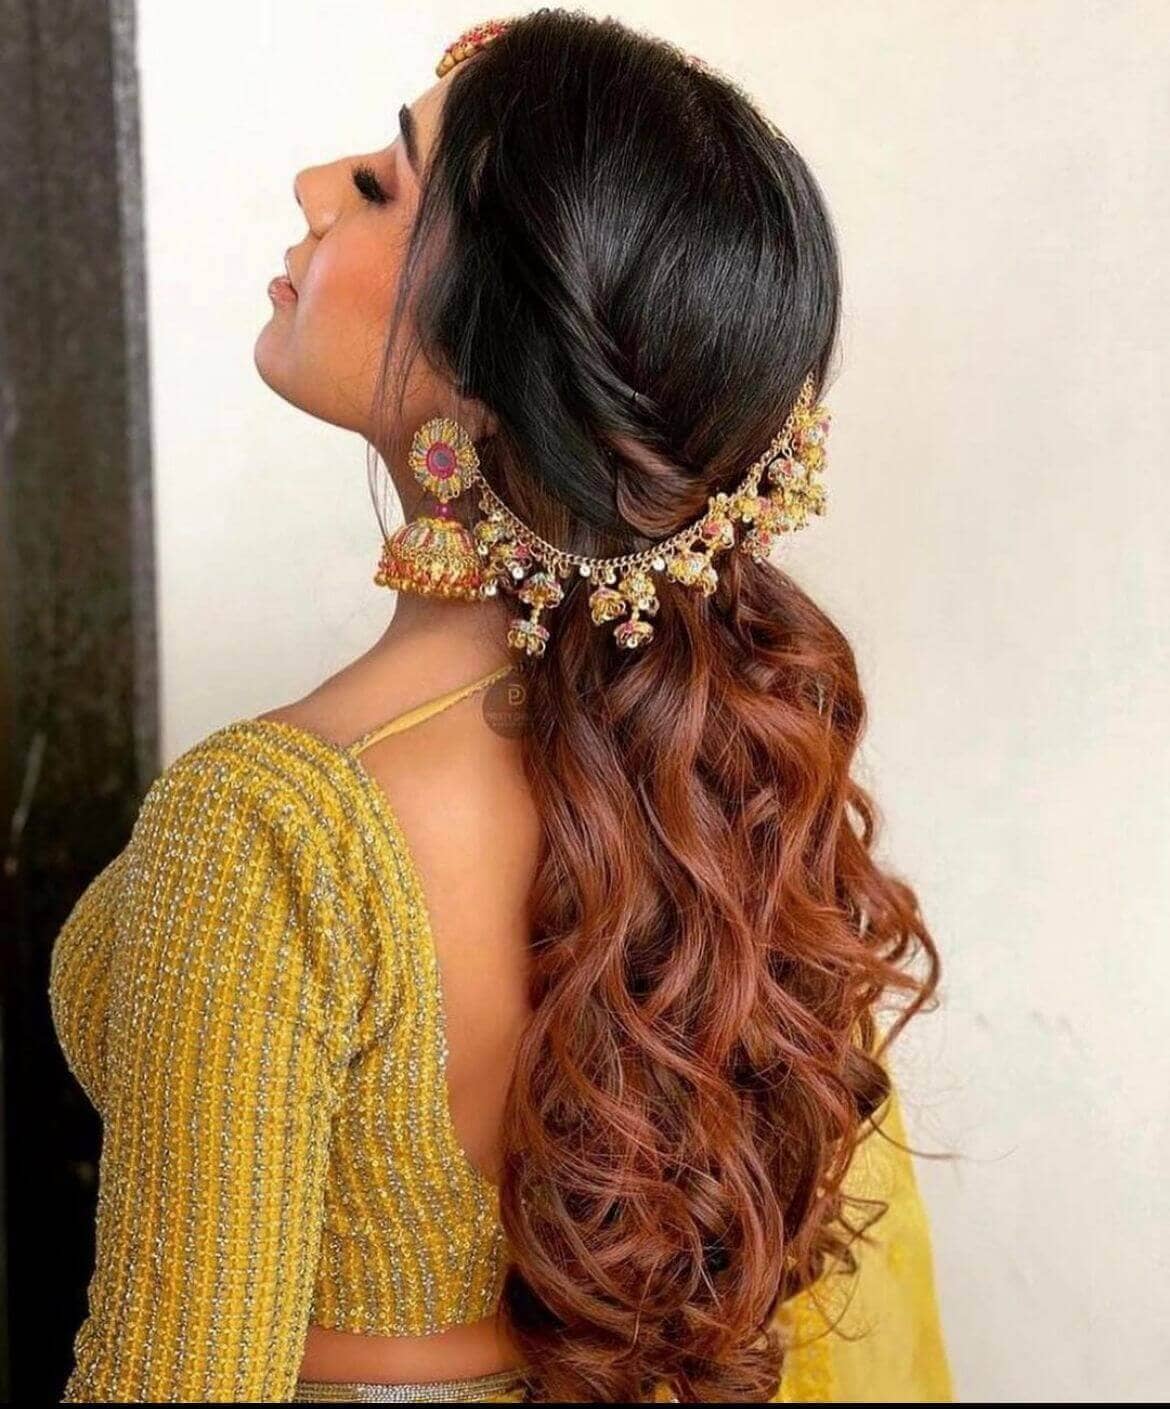 kanyaadhan bride in beautiful earrings with hair accessories